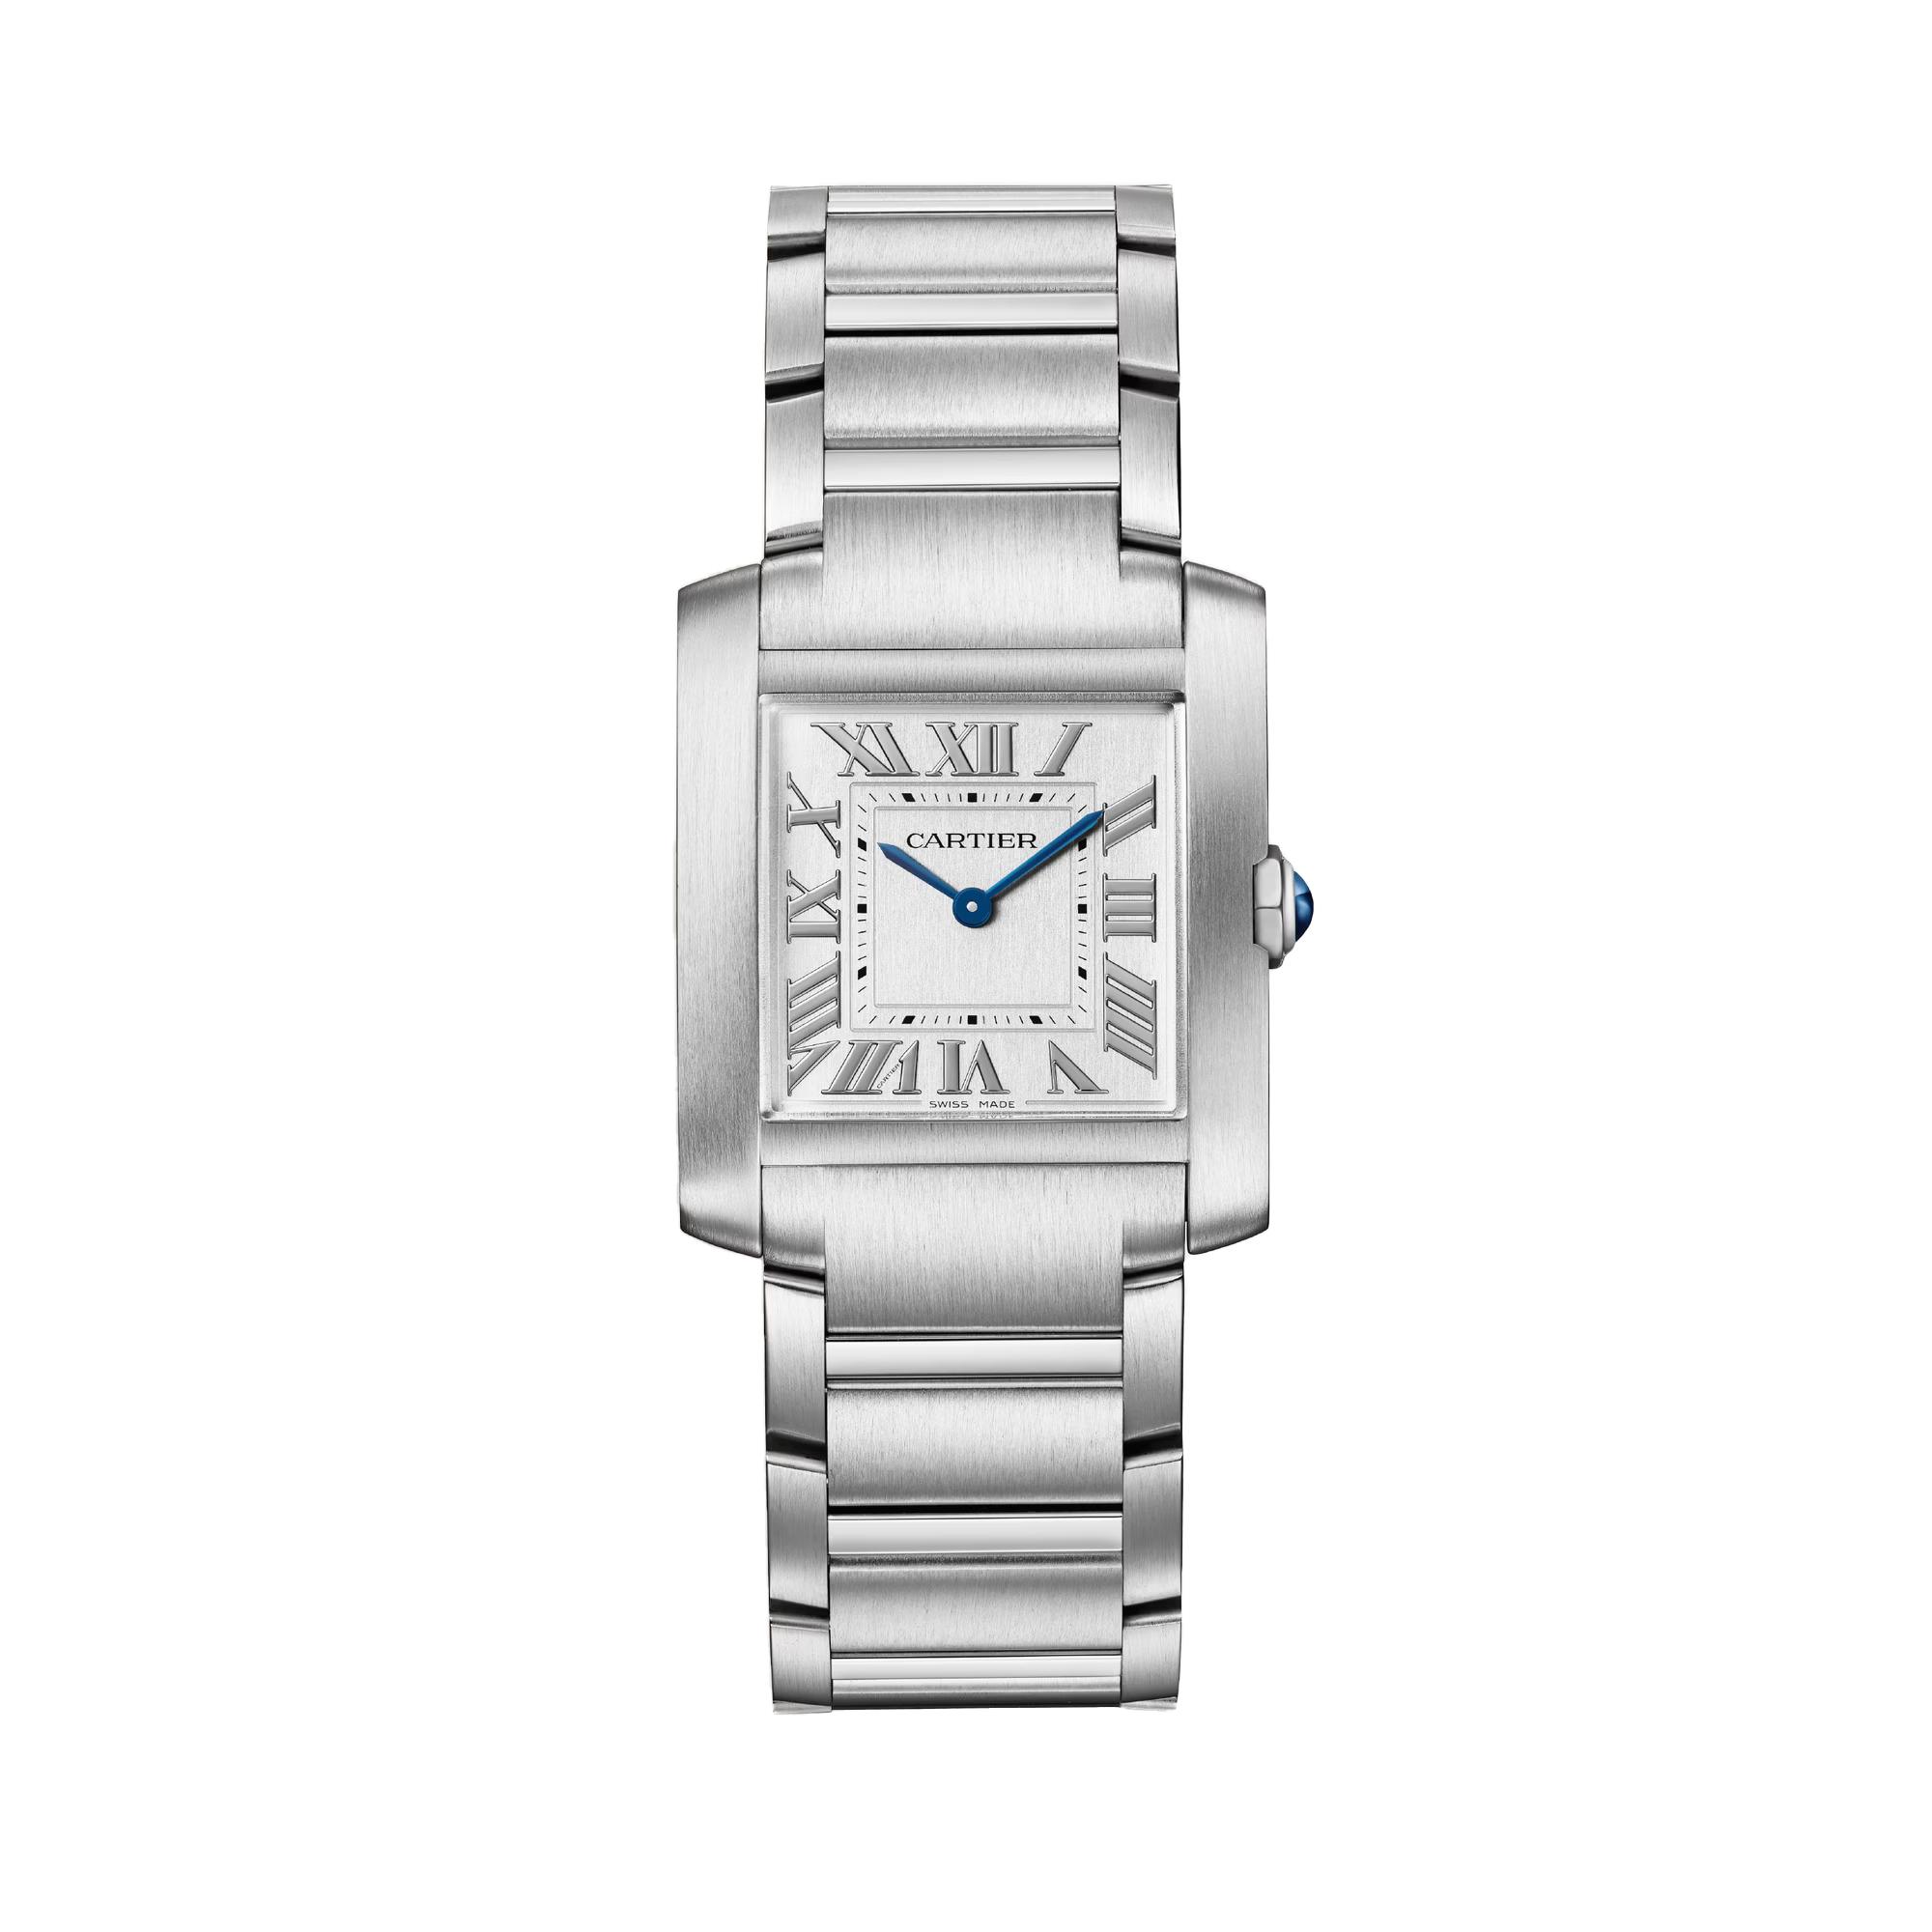 Cartier Tank Francaise Watch, size medium